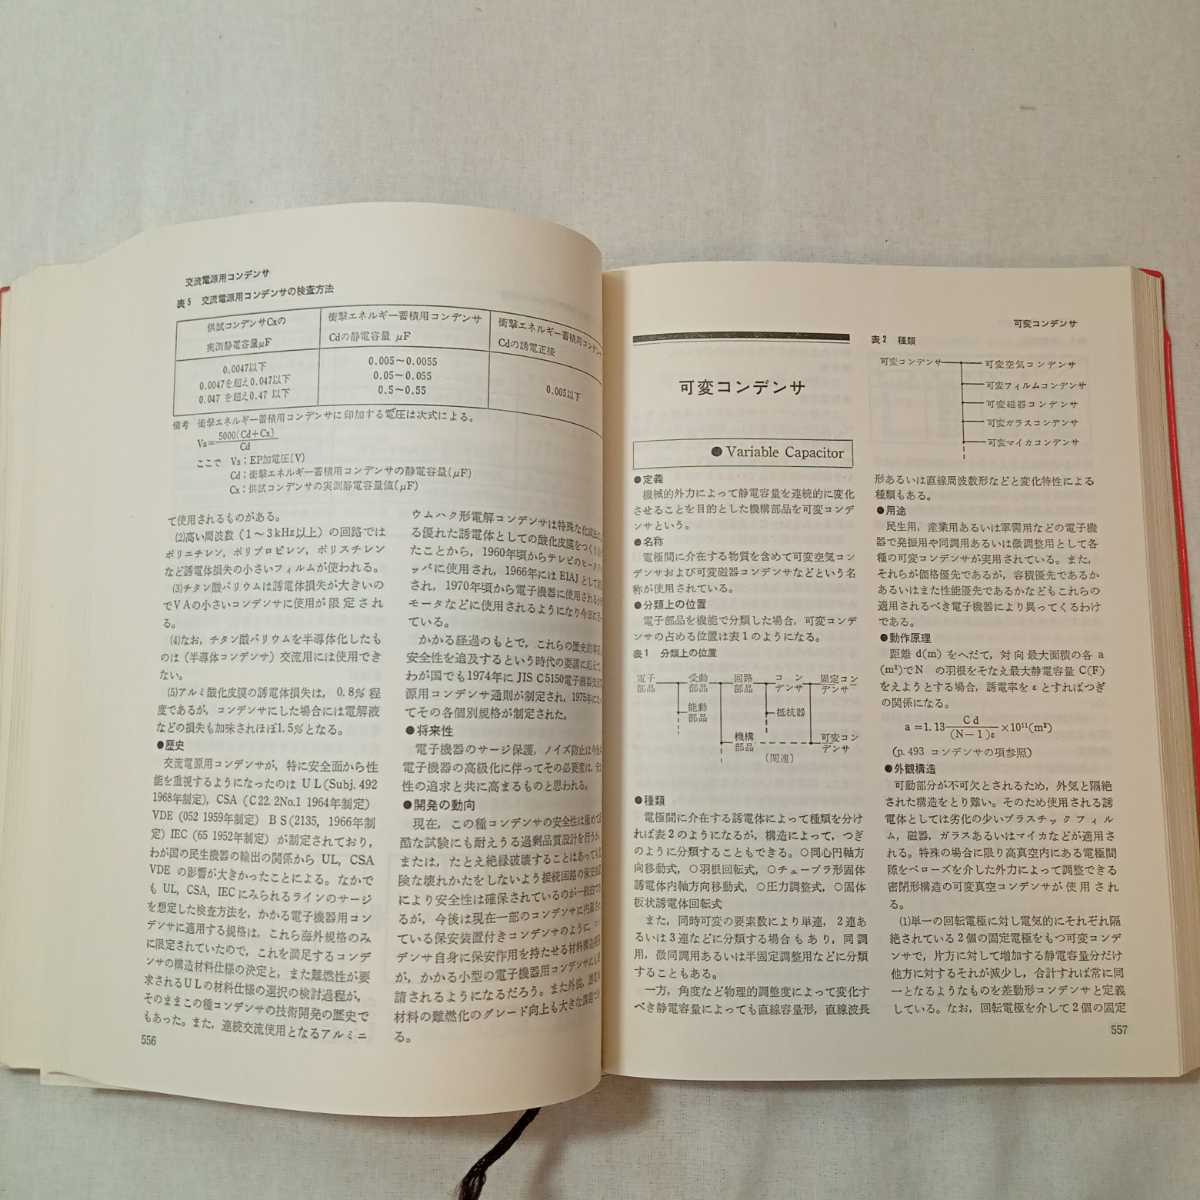 zaa-381! новейший электронный детали рука книжка радиоволны газета фирма (1977 год )